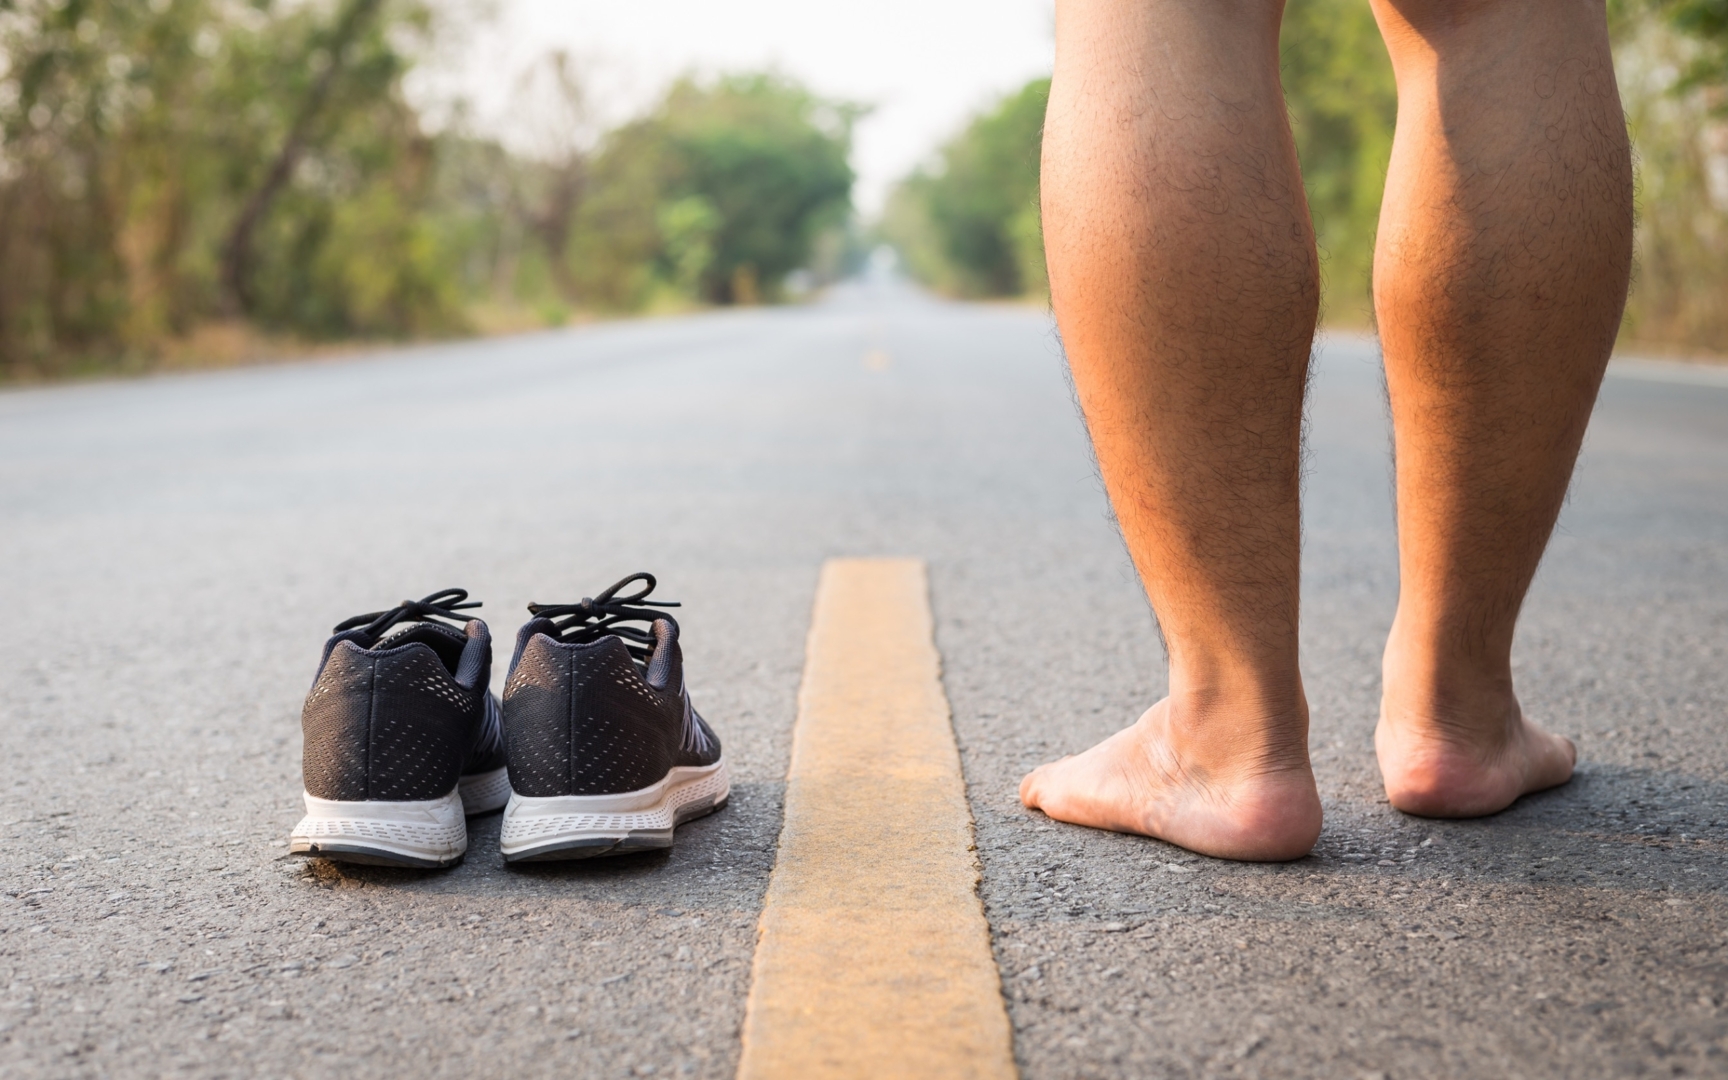 Runner's World Sports Doc on Barefoot Running